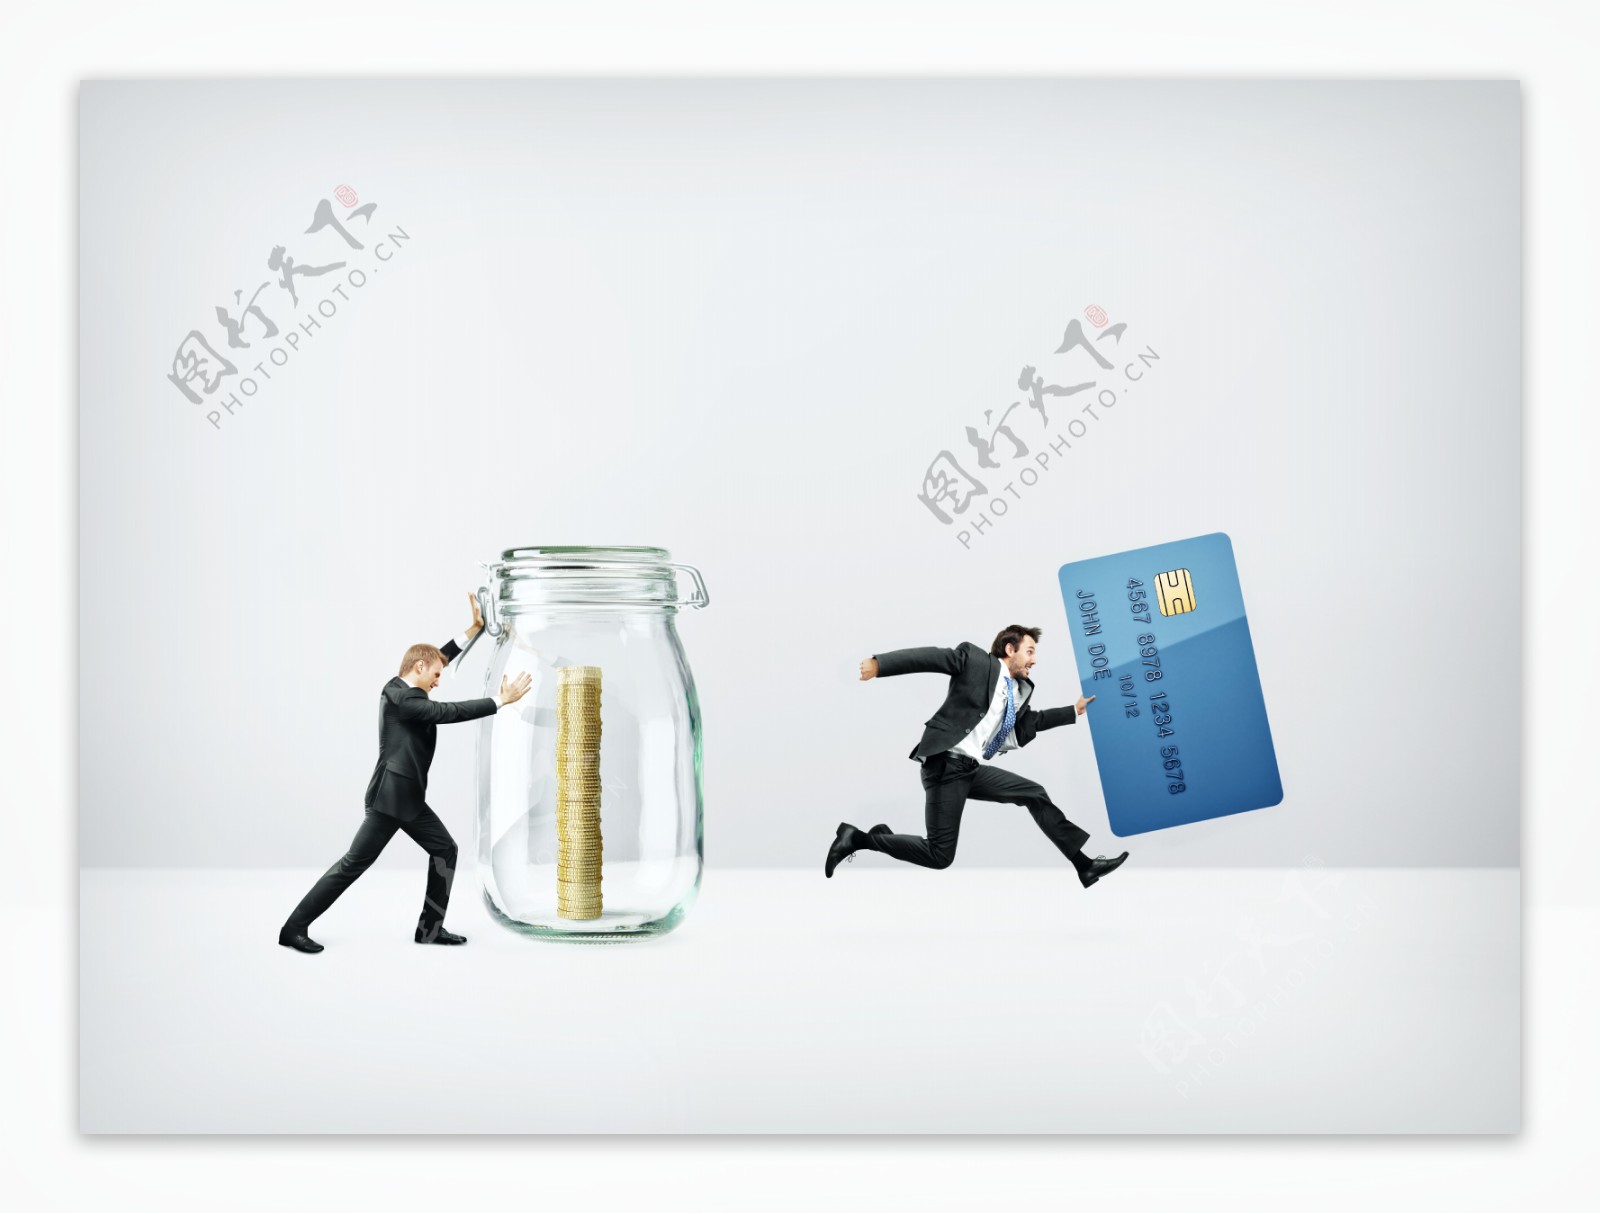 拿银行卡与推储钱罐的商务人图片